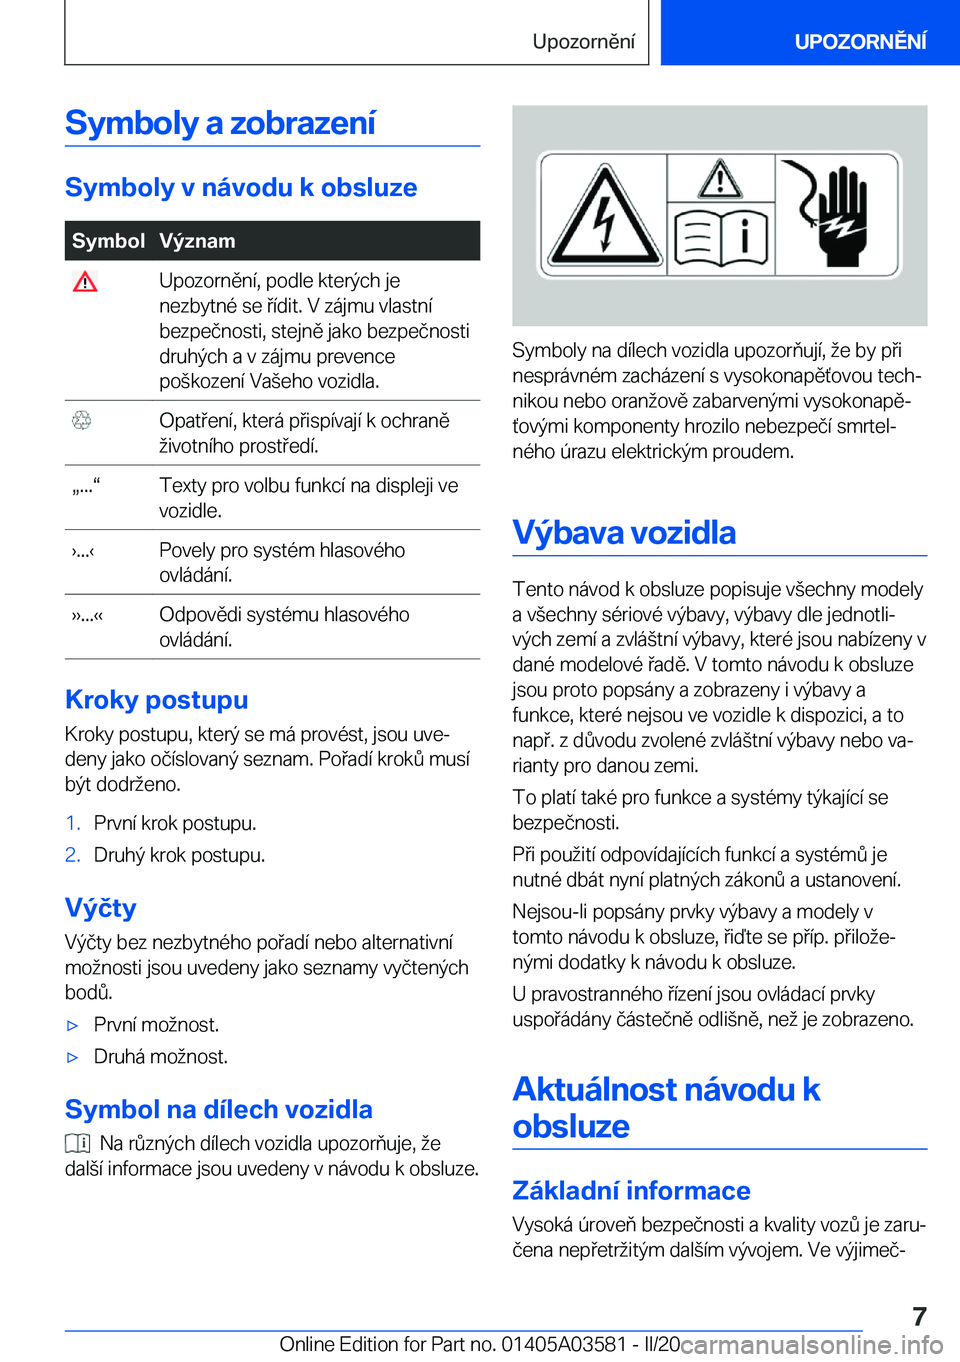 BMW X3 PLUG IN HYBRID 2020  Návod na použití (in Czech) �S�y�m�b�o�l�y��a��z�o�b�r�a�z�e�n�